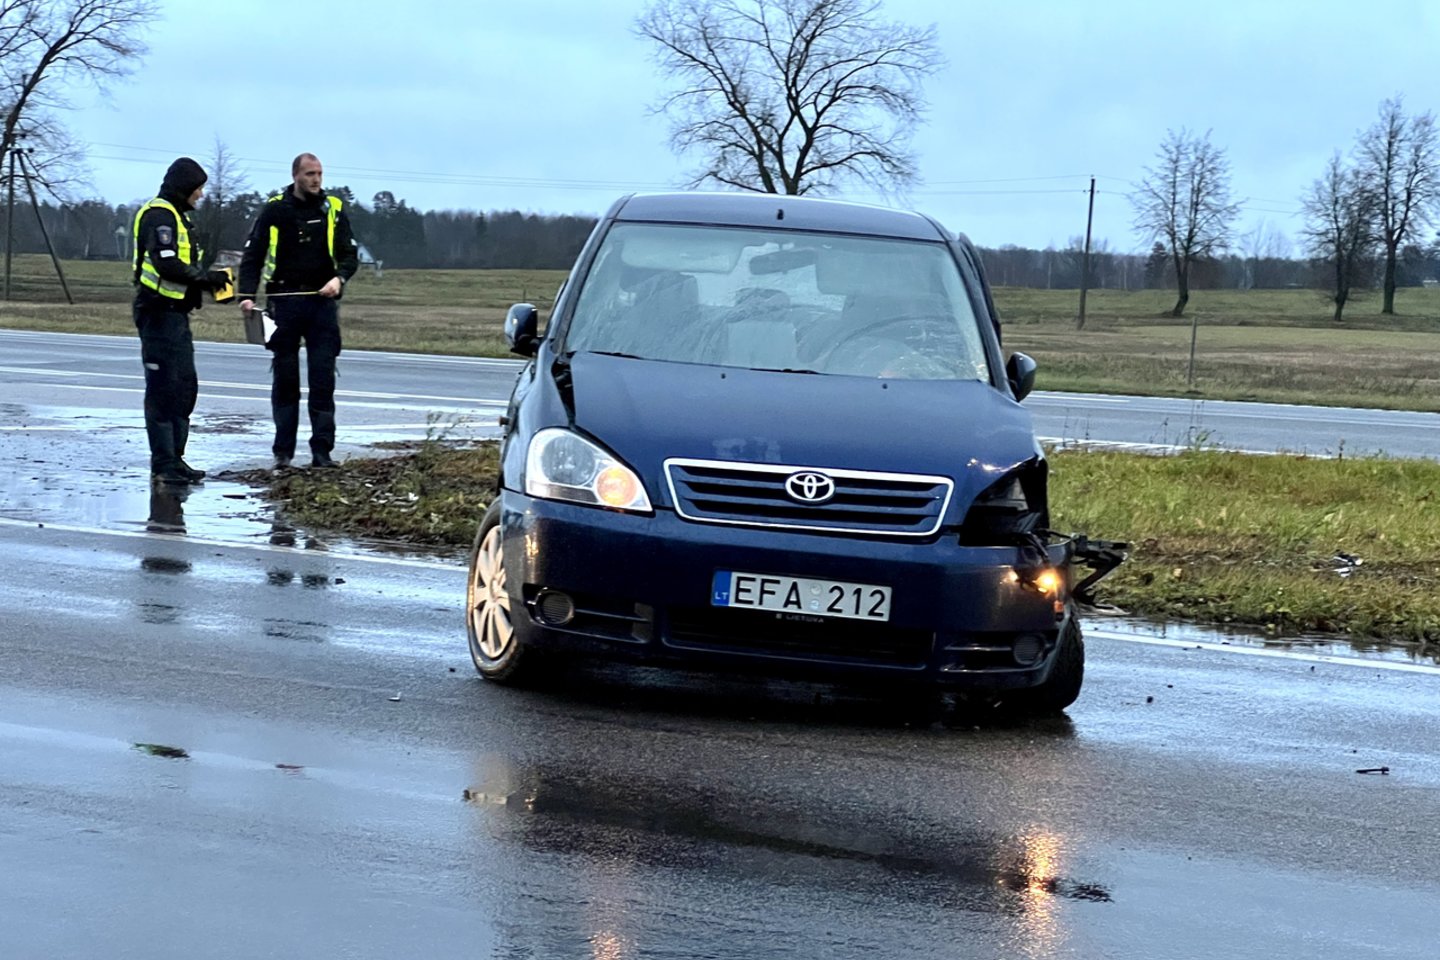 Lietingą sekmadienio popietę netoli Ukmergės susidūrė du automobiliai.<br> V. Ščiavinsko nuotr.